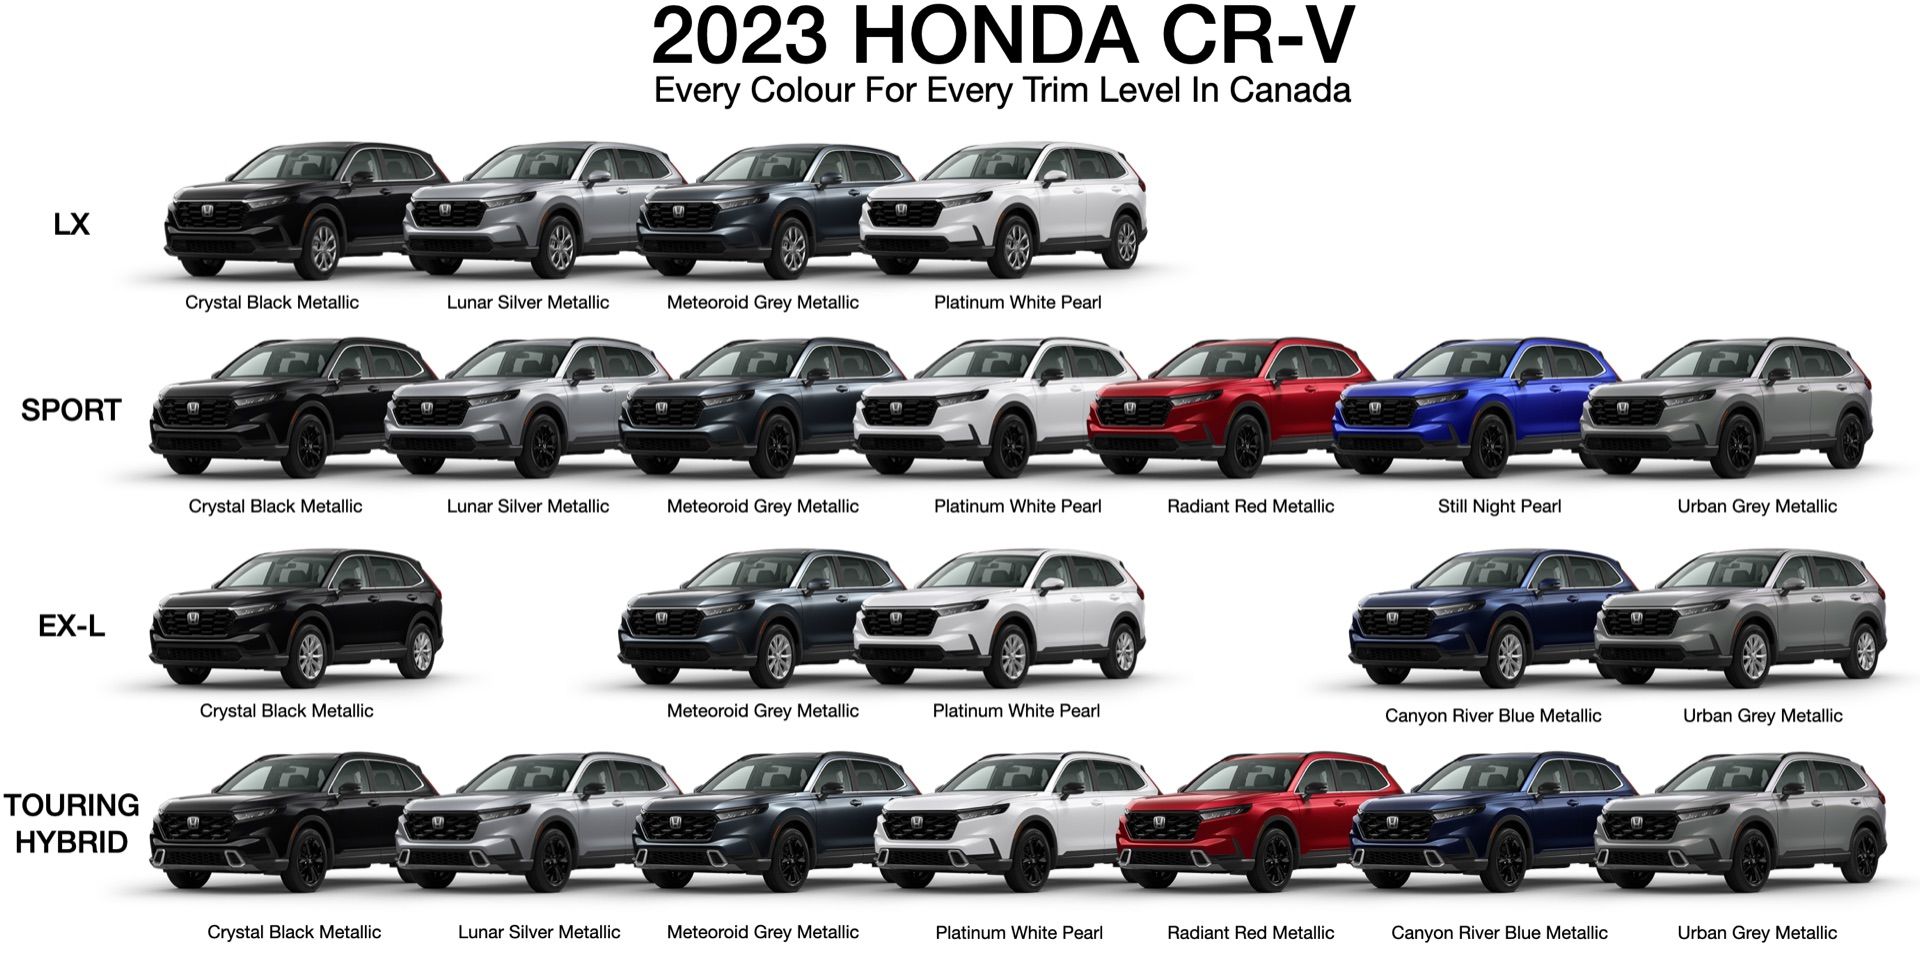 Every Colour For Every Trim Level On The 2023 Honda CR-V